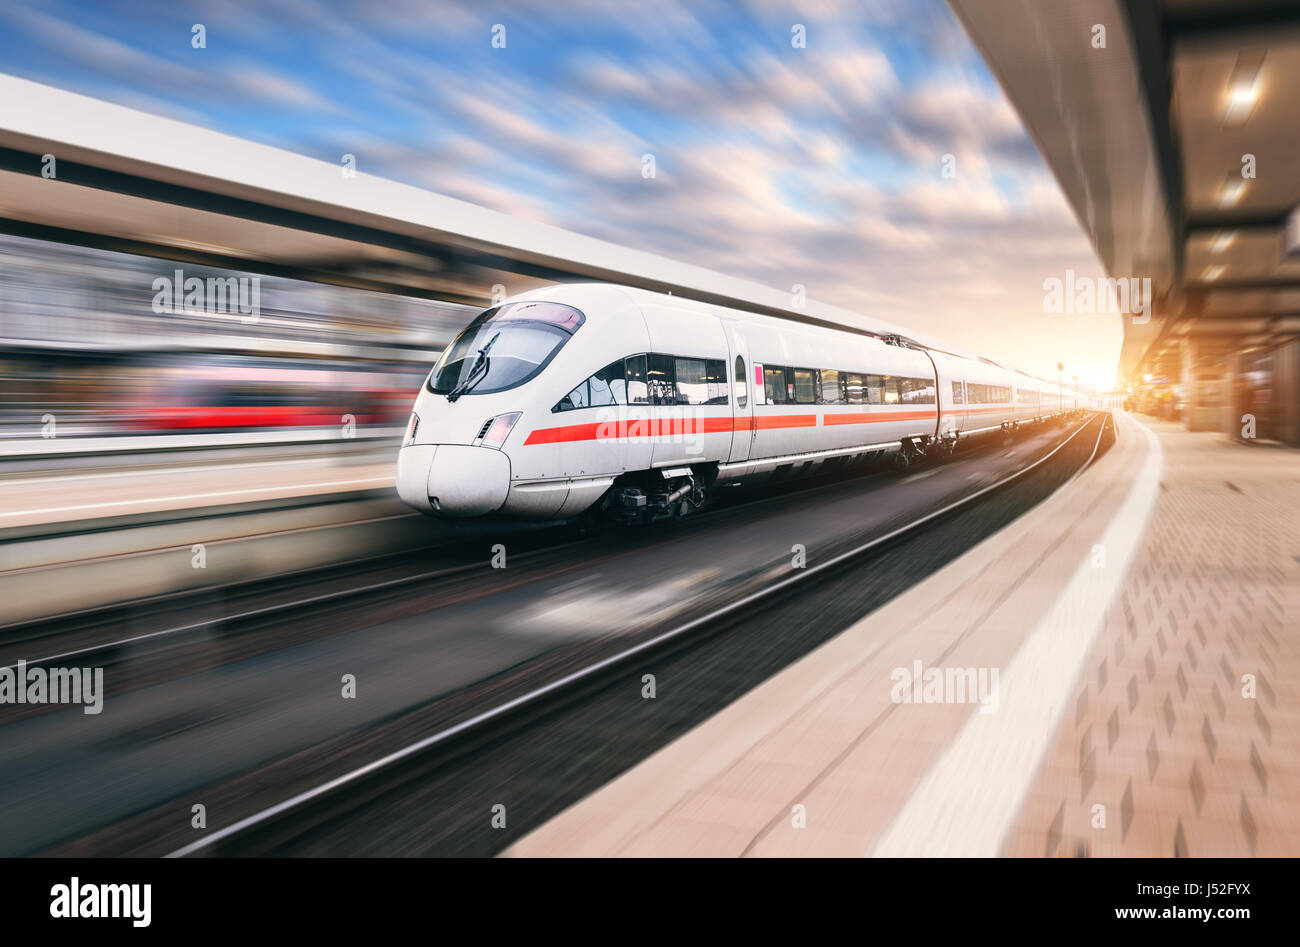 Weiße moderne high-Speed-Zug in Bewegung am Bahnhof bei Sonnenuntergang. Zug auf Bahngleis mit Motion blur Effekt in Europa Abend. Eisenbahn-pl Stockfoto